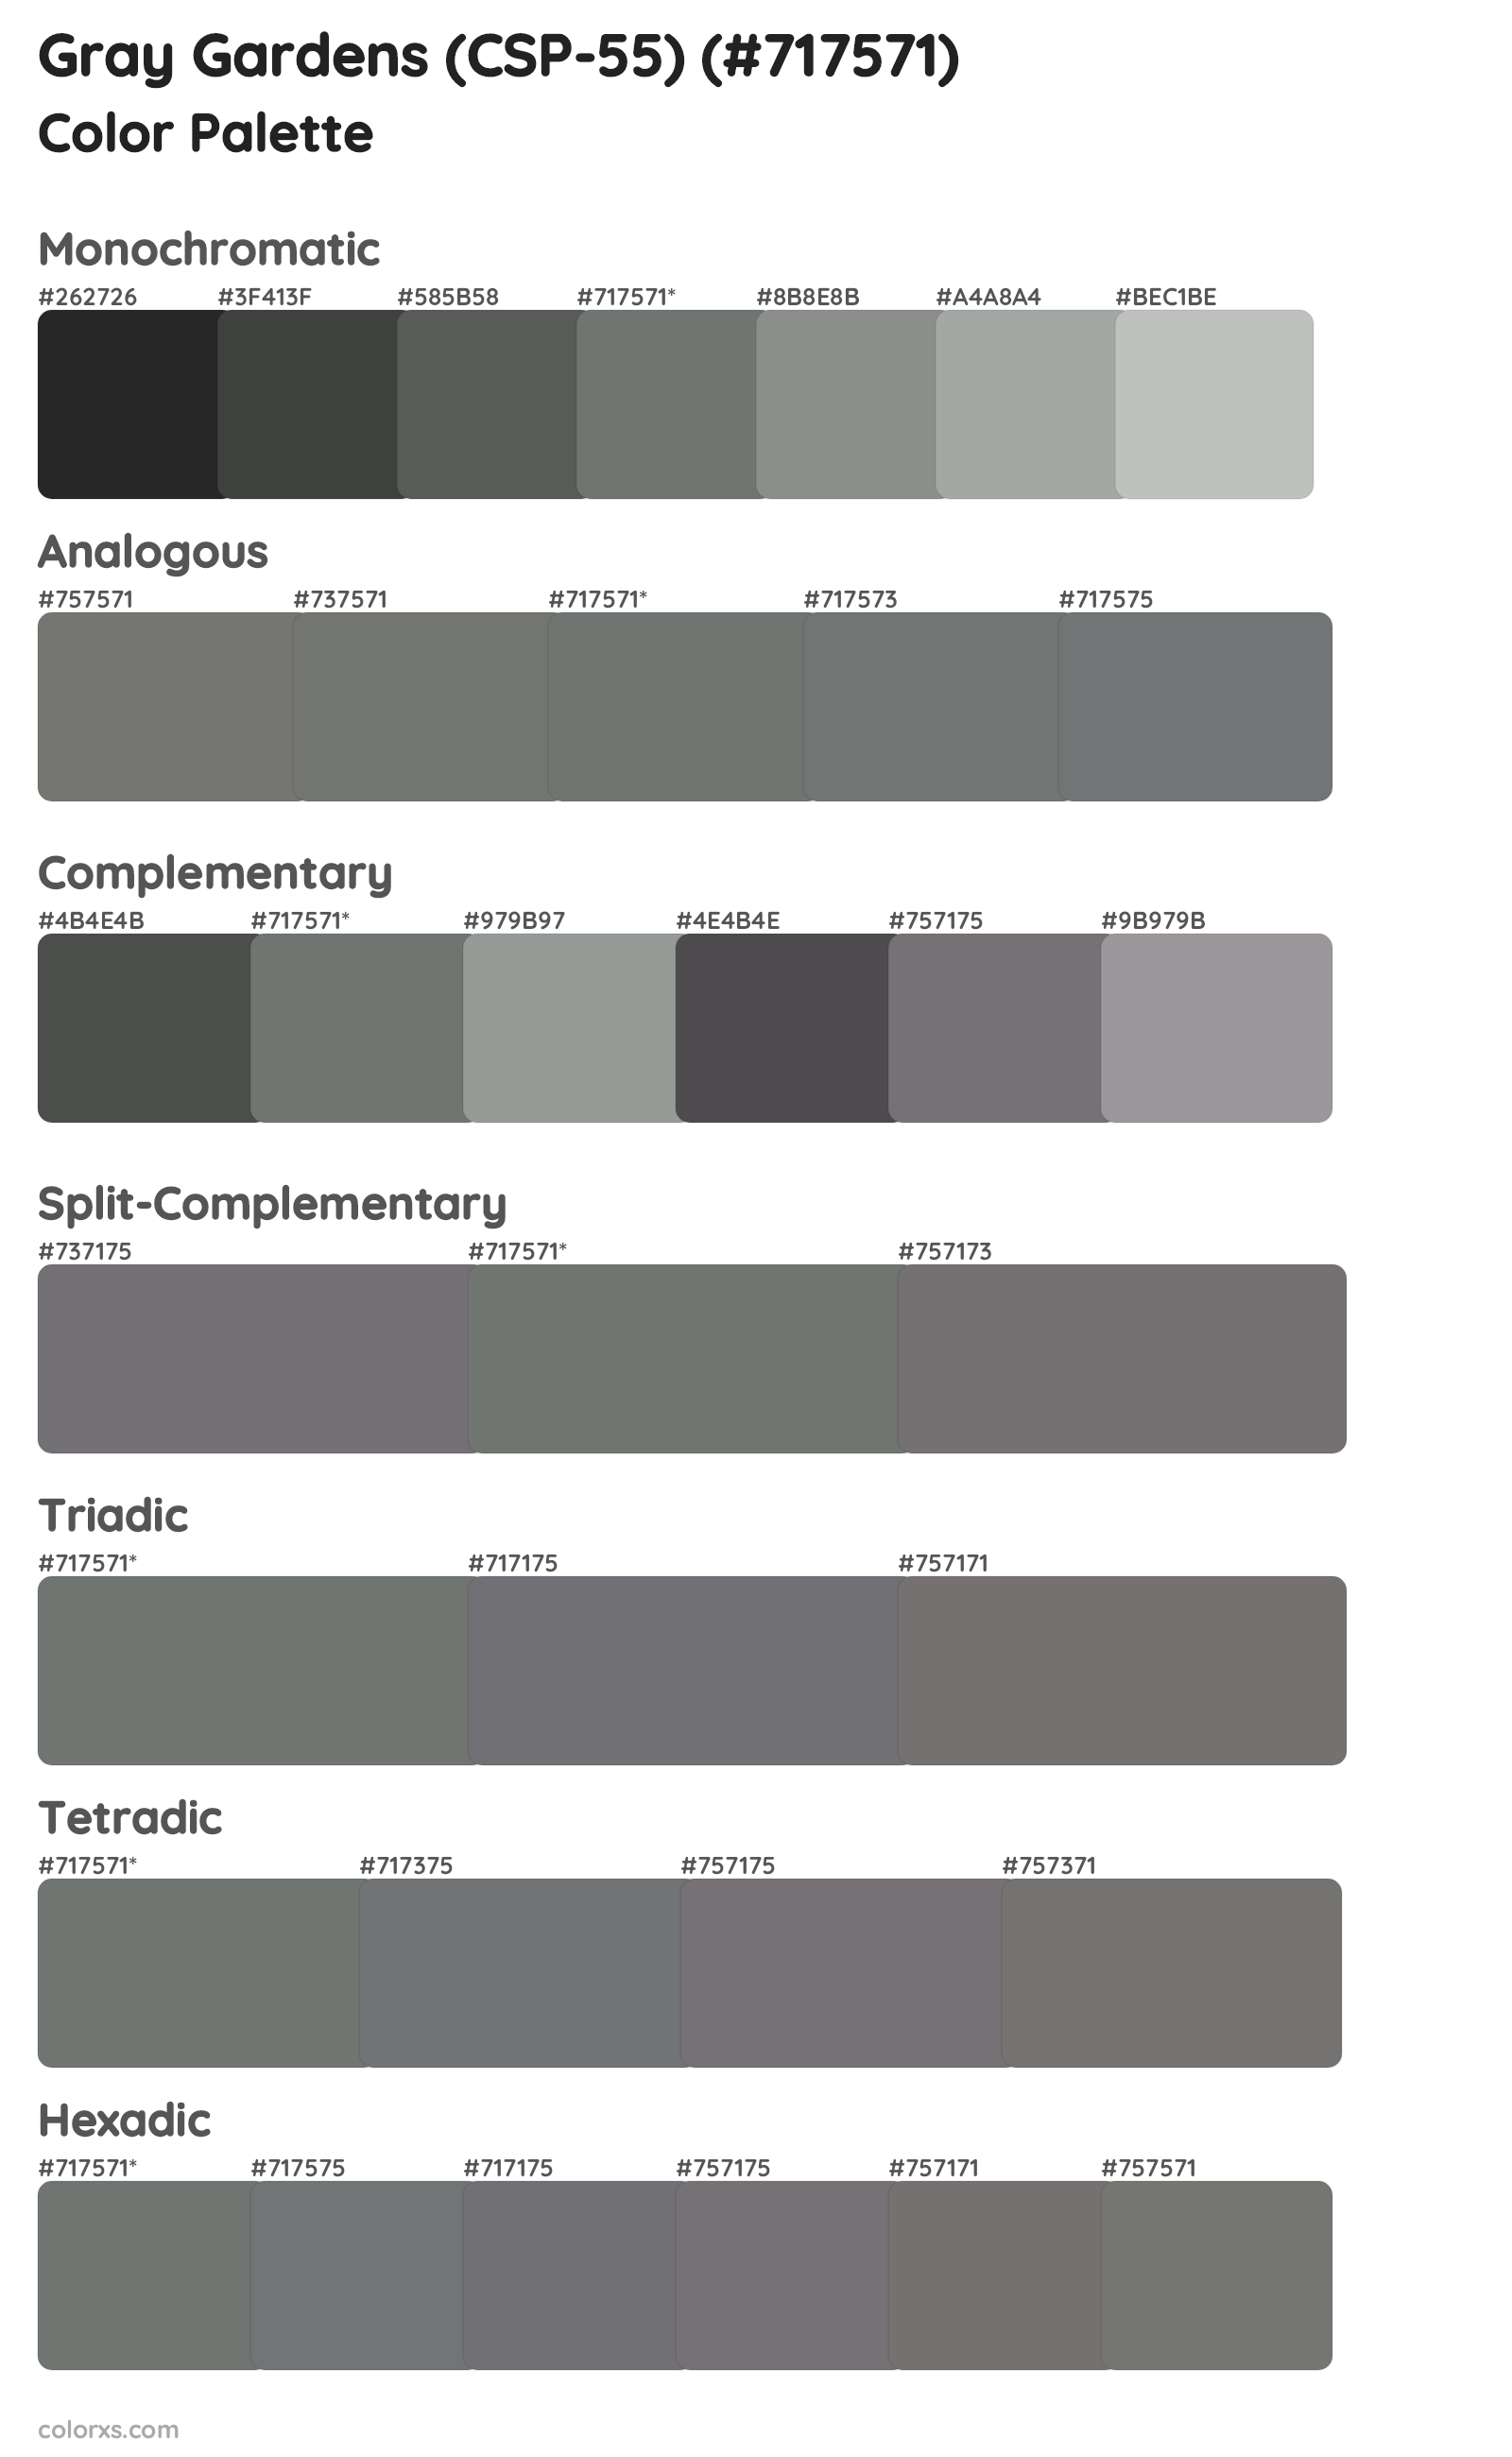 Gray Gardens (CSP-55) Color Scheme Palettes